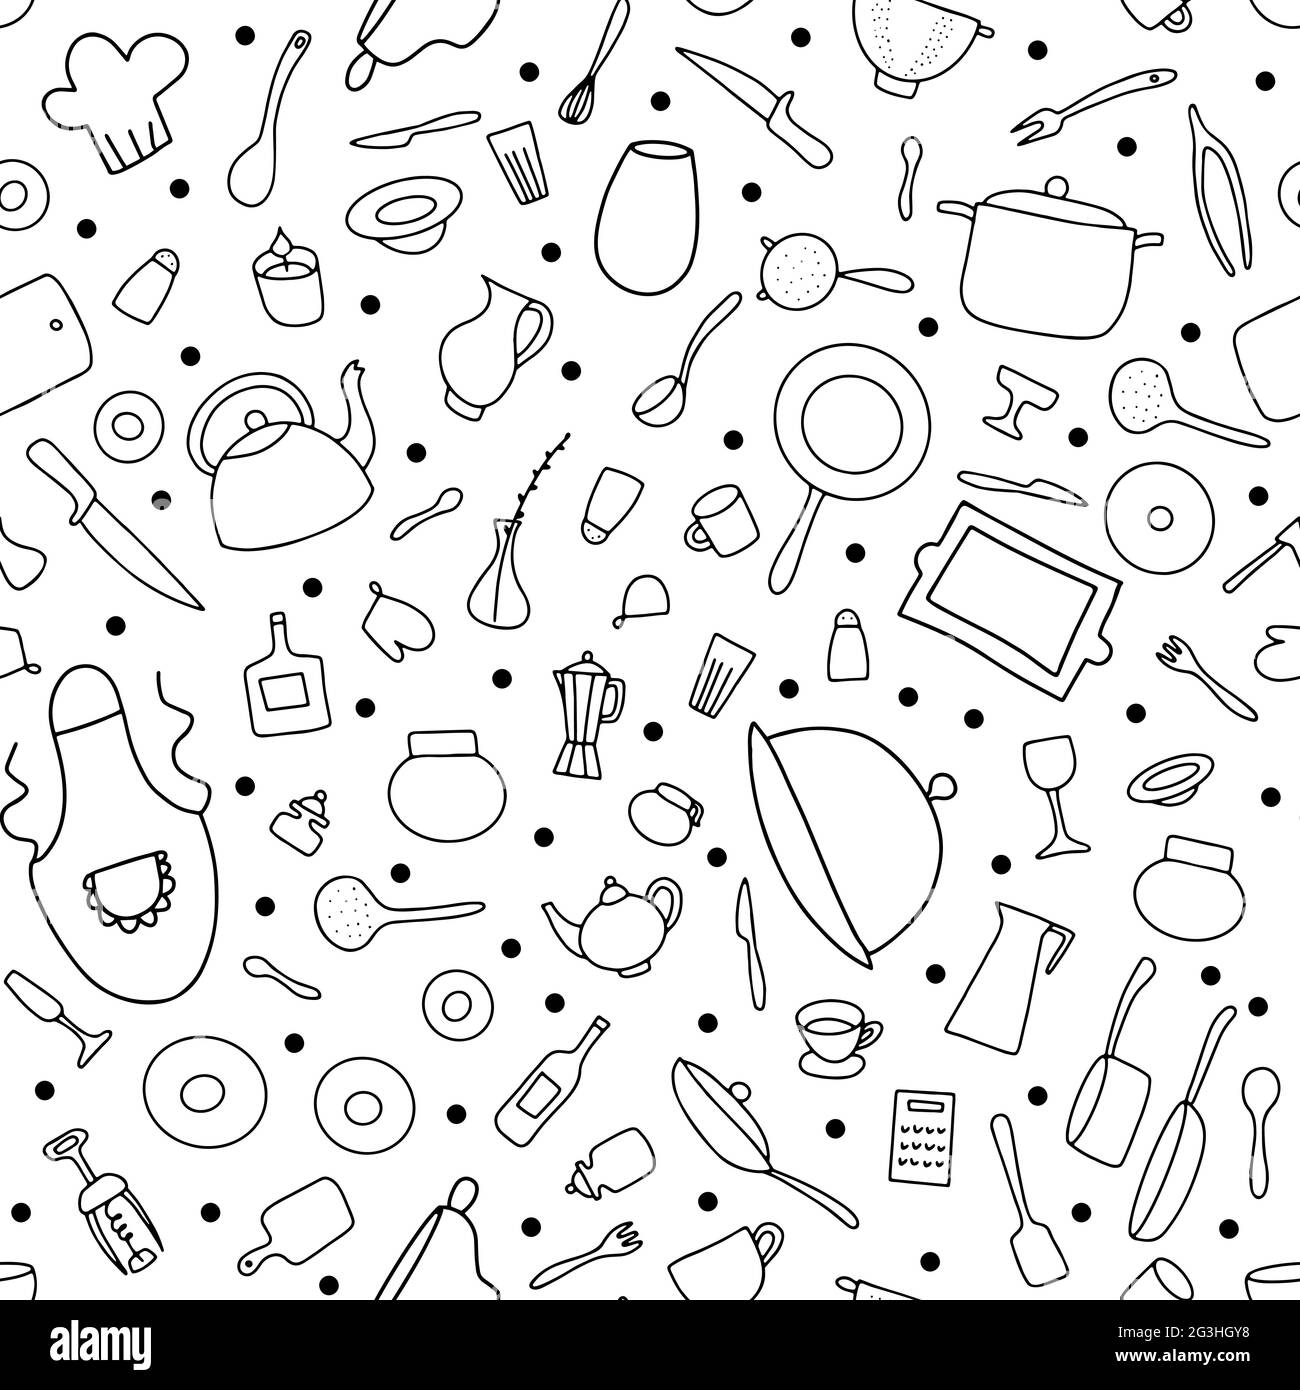 Nahtlose Doodle Geschirr Vektor-Muster. Umreißen Sie Gerichte isoliert auf weißem Hintergrund. Kochtöpfe, Pfannen, Teller, Besteck, Wasserkocher, Kaffee Cu Stock Vektor